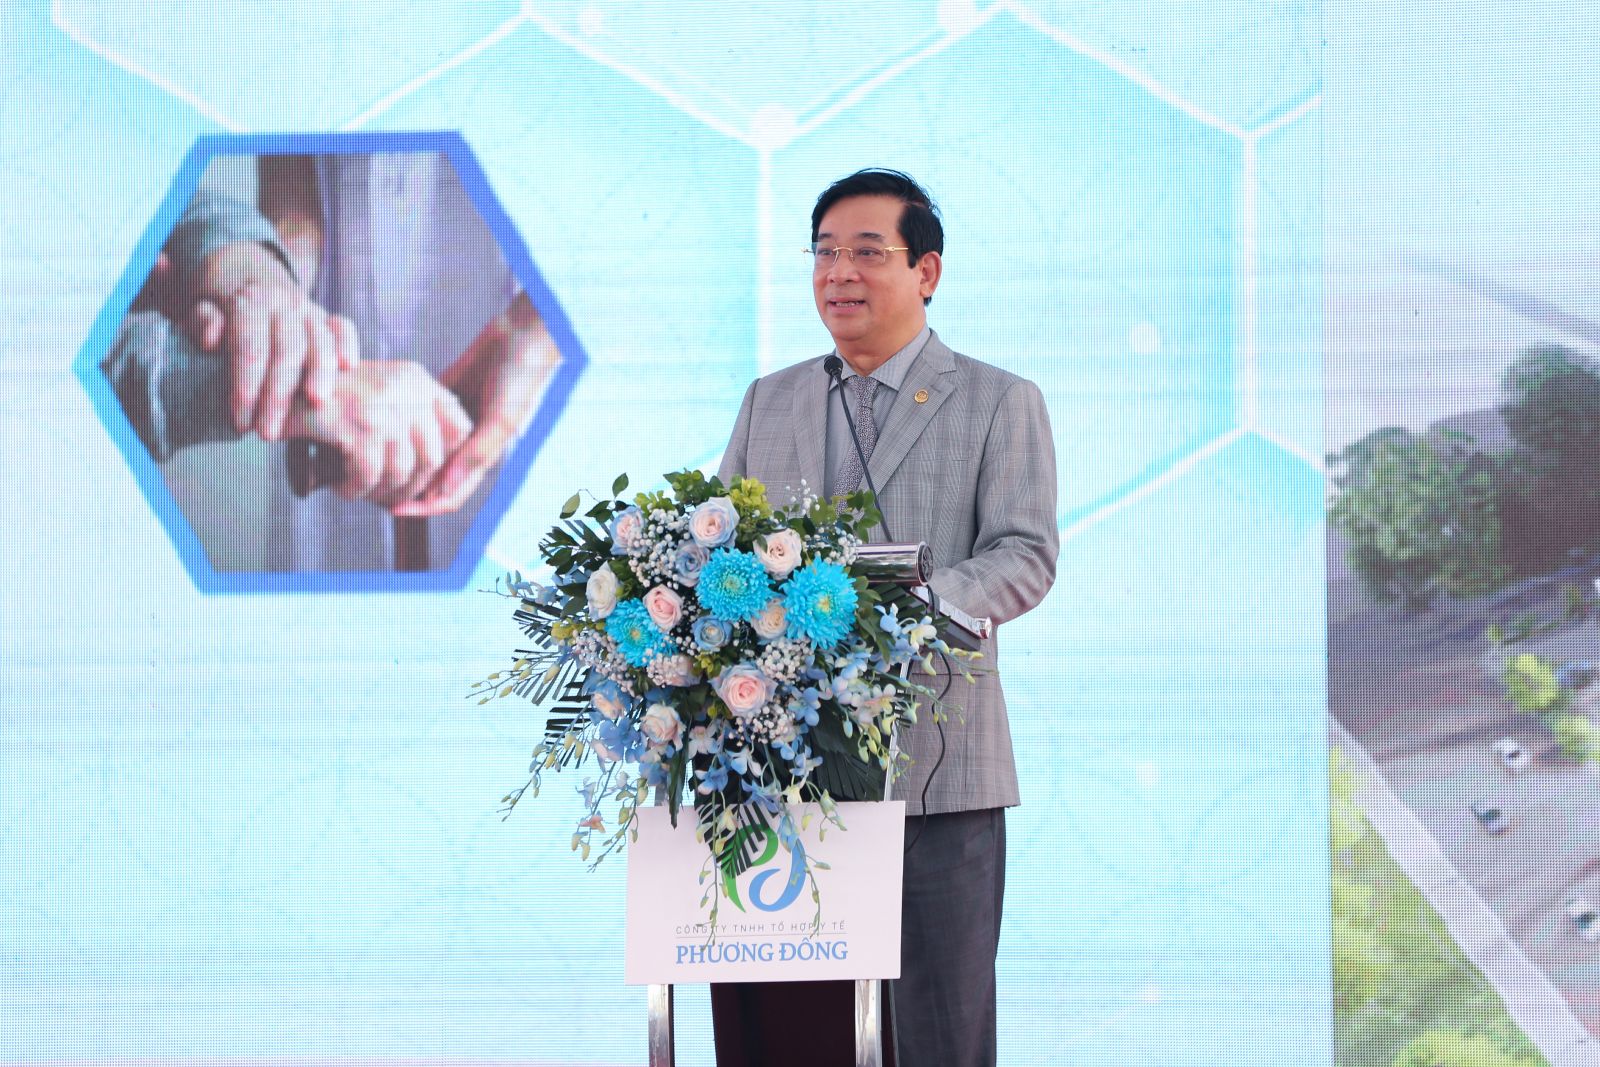 Ông Lương Ngọc Khuê - Cục trưởng Cục khám chữa bệnh Bộ Y tế phát biểu chúc mừng dấu ấn mới trên hành trình phát triển của Tổ hợp Y tế Phương Đông và Viện dưỡng lão Phương Đông Asahi.